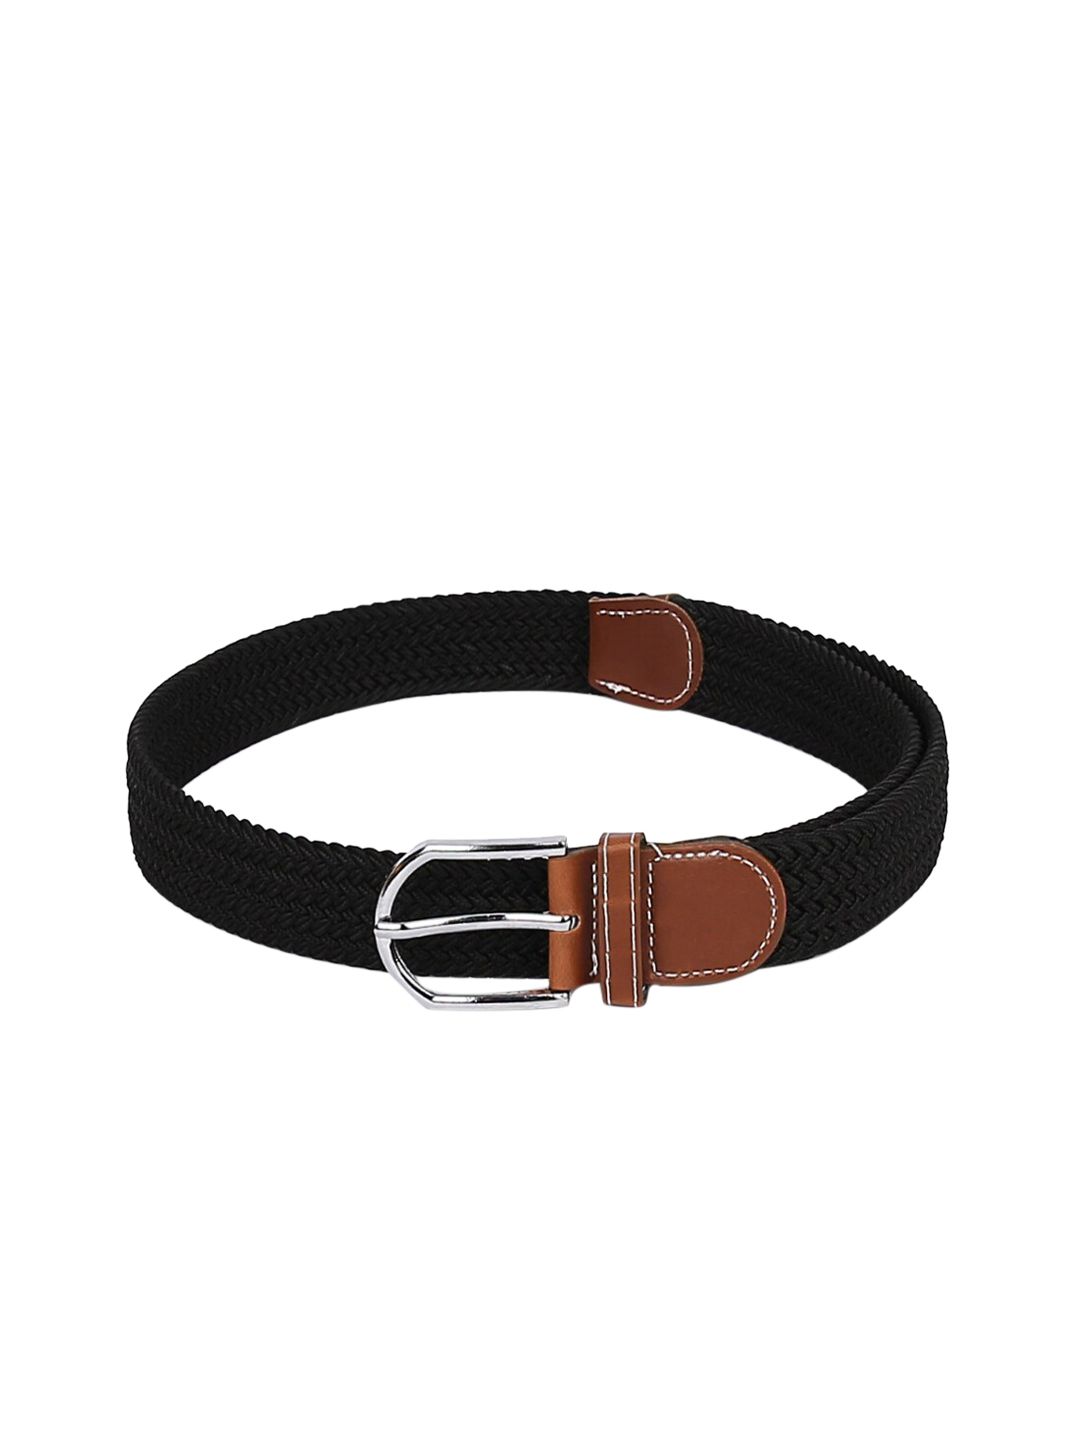 CRUSSET Unisex Black Braided Belt Price in India